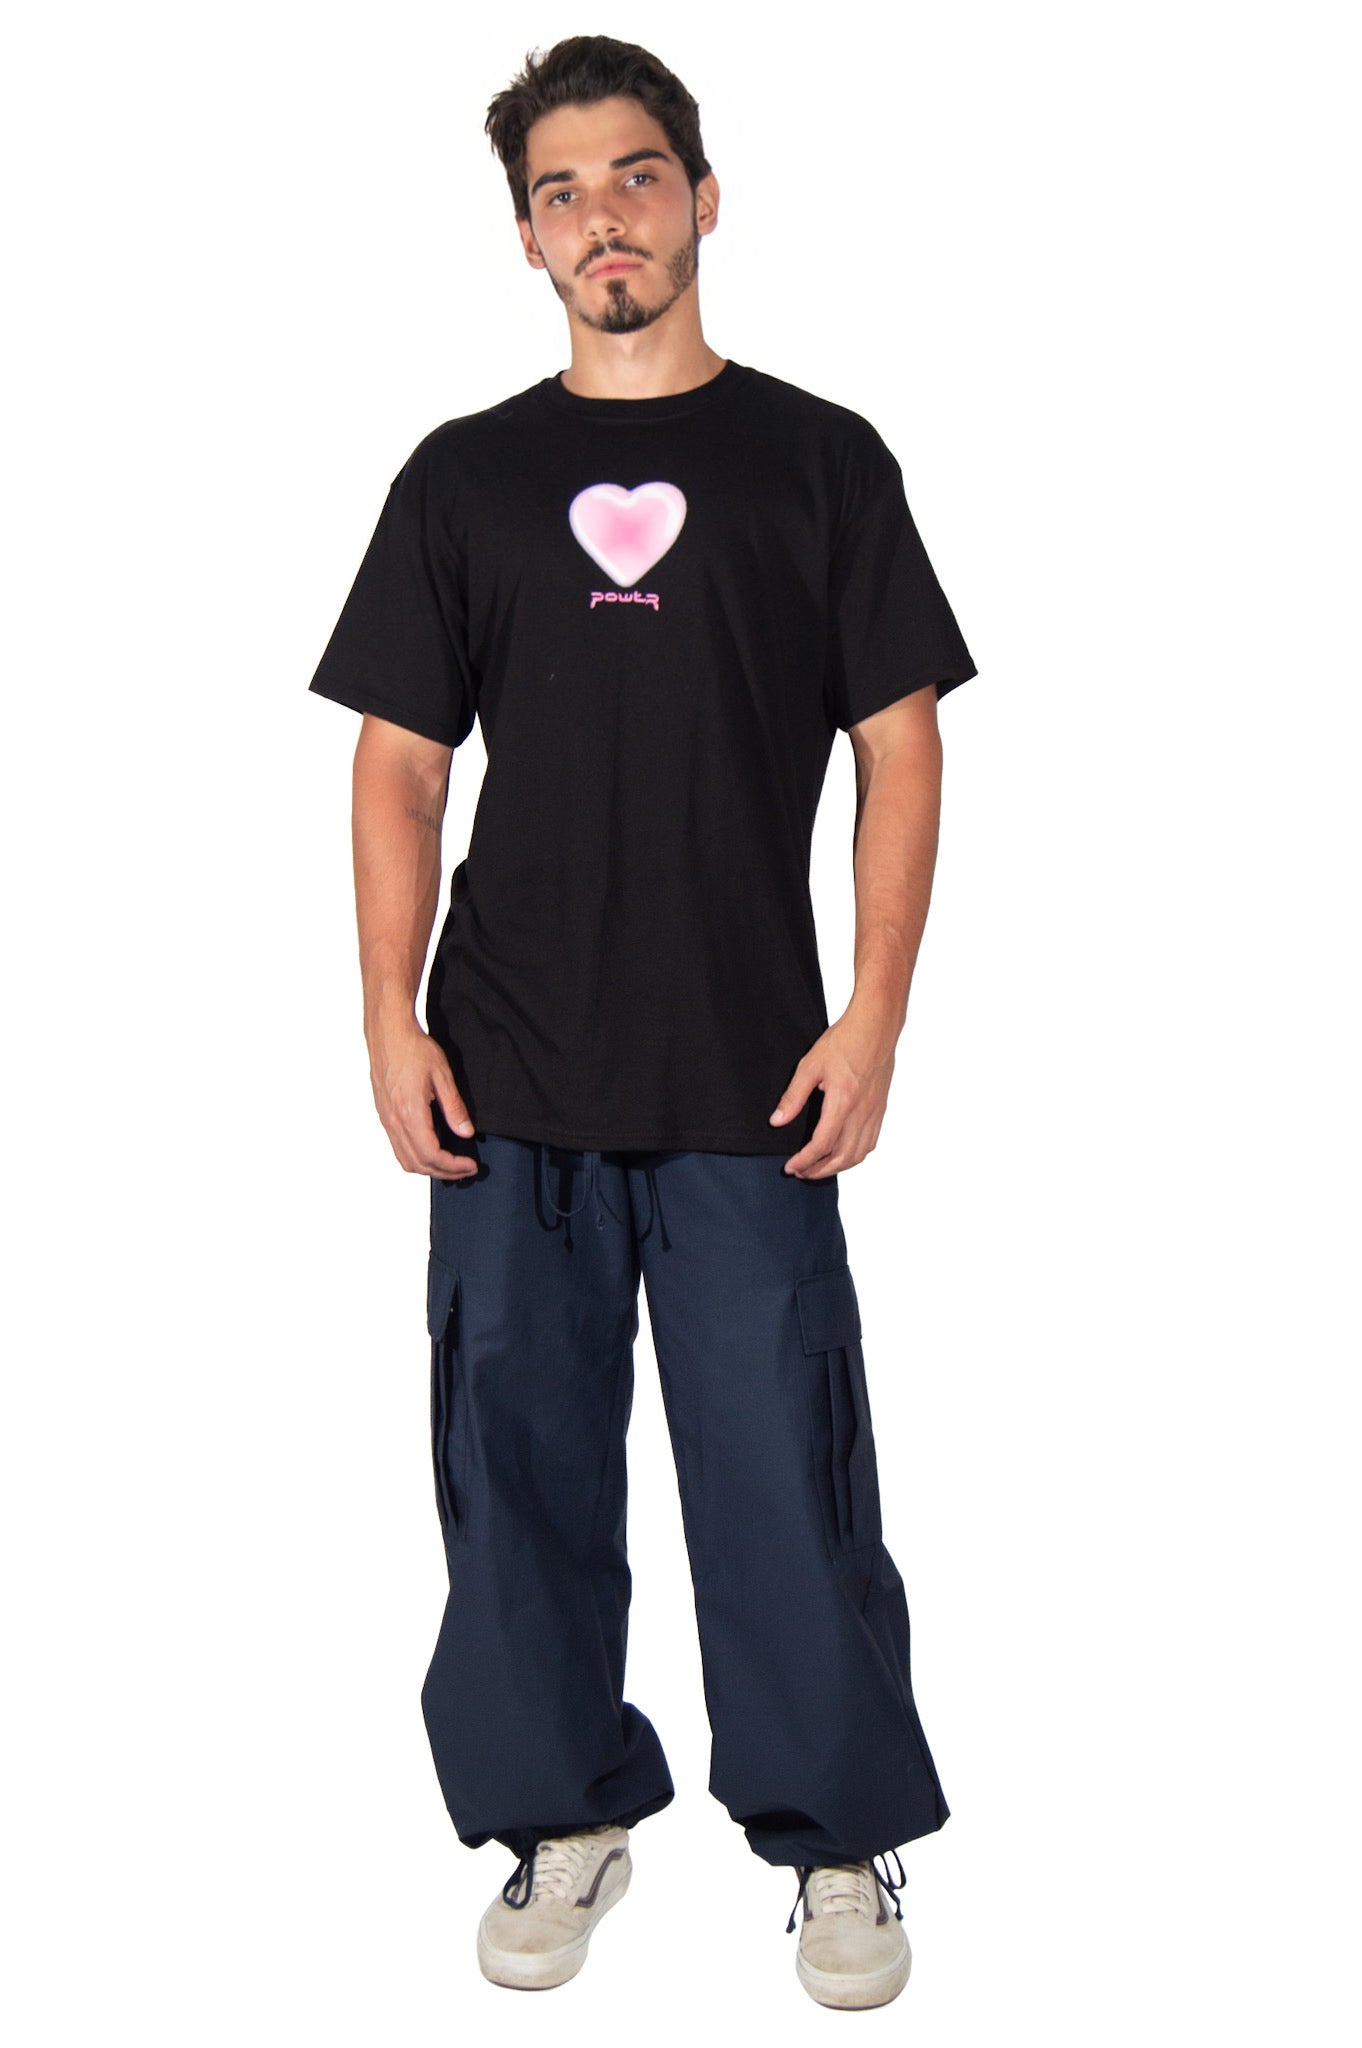 Power Heart Black T-Shirt